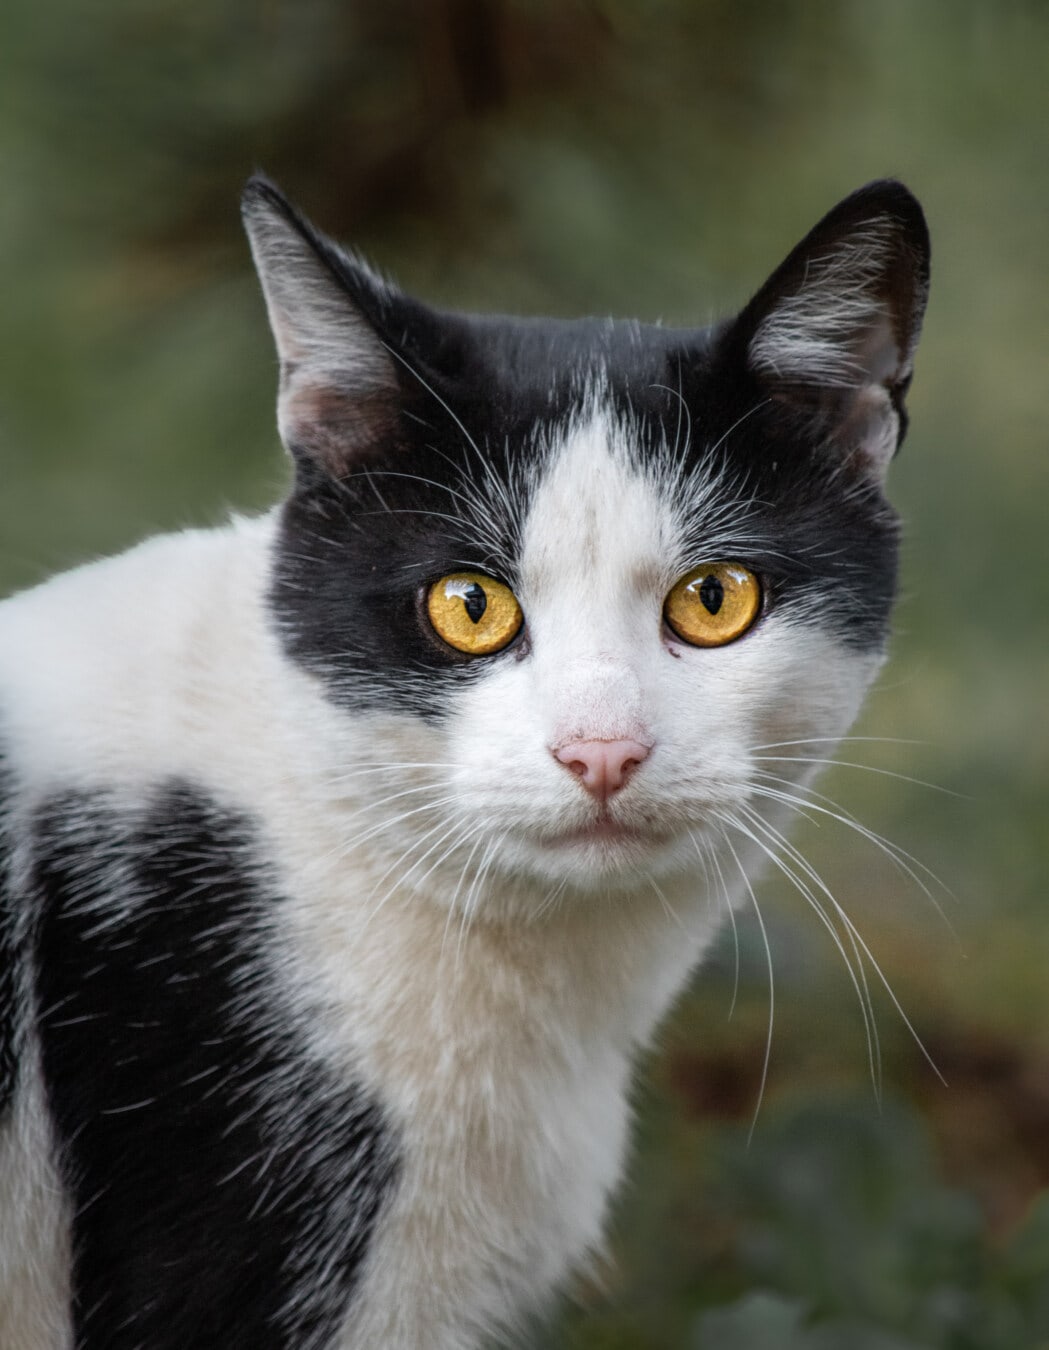 черный и белый, домашняя кошка, глаза, оранжевый желтый, портрет, руководитель, кошачьи, кошка, мех, котенок